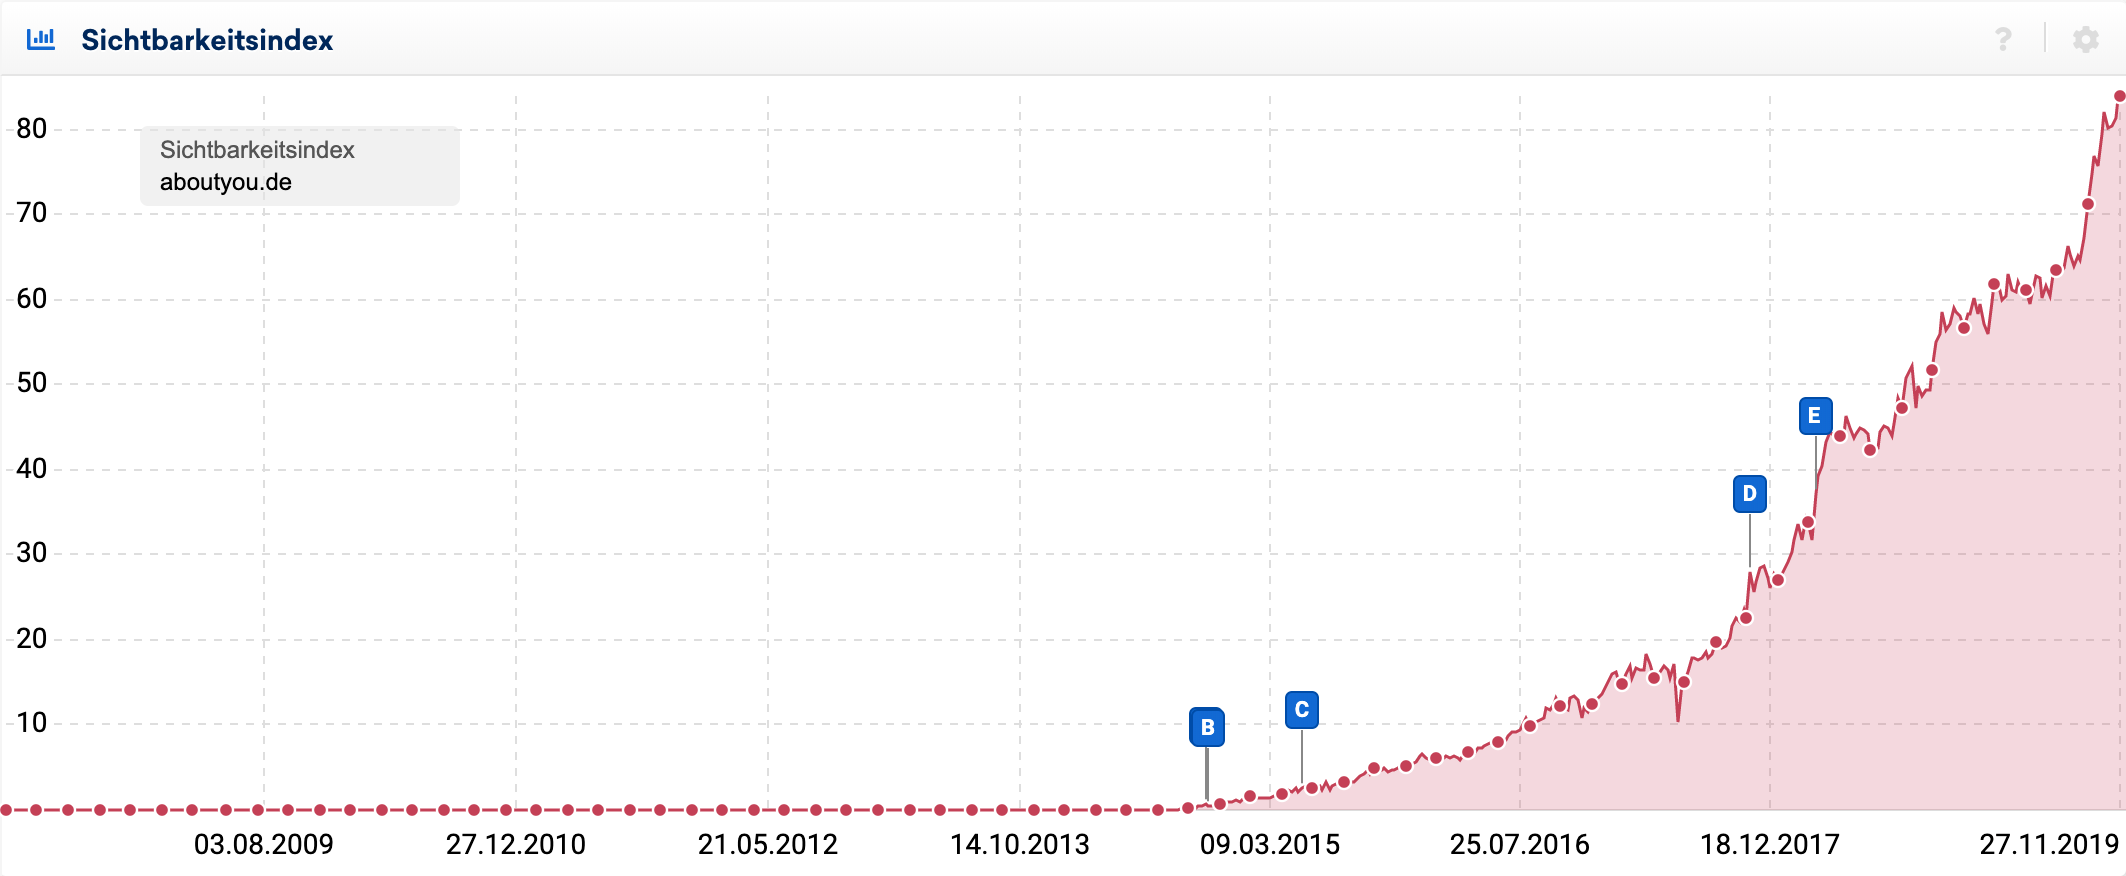 Sichtbarkeitsverlauf für den Desktop-Wert der Domain aboutyou.de seit 2008. Die Domain ist erst seit 2014 sichtbar, seitdem steigt die Sichtbarkeit ständig an. Des weiteren sind 4 blaue Ereignispins zu verschiedenen Datums-Punkten zu sehen.